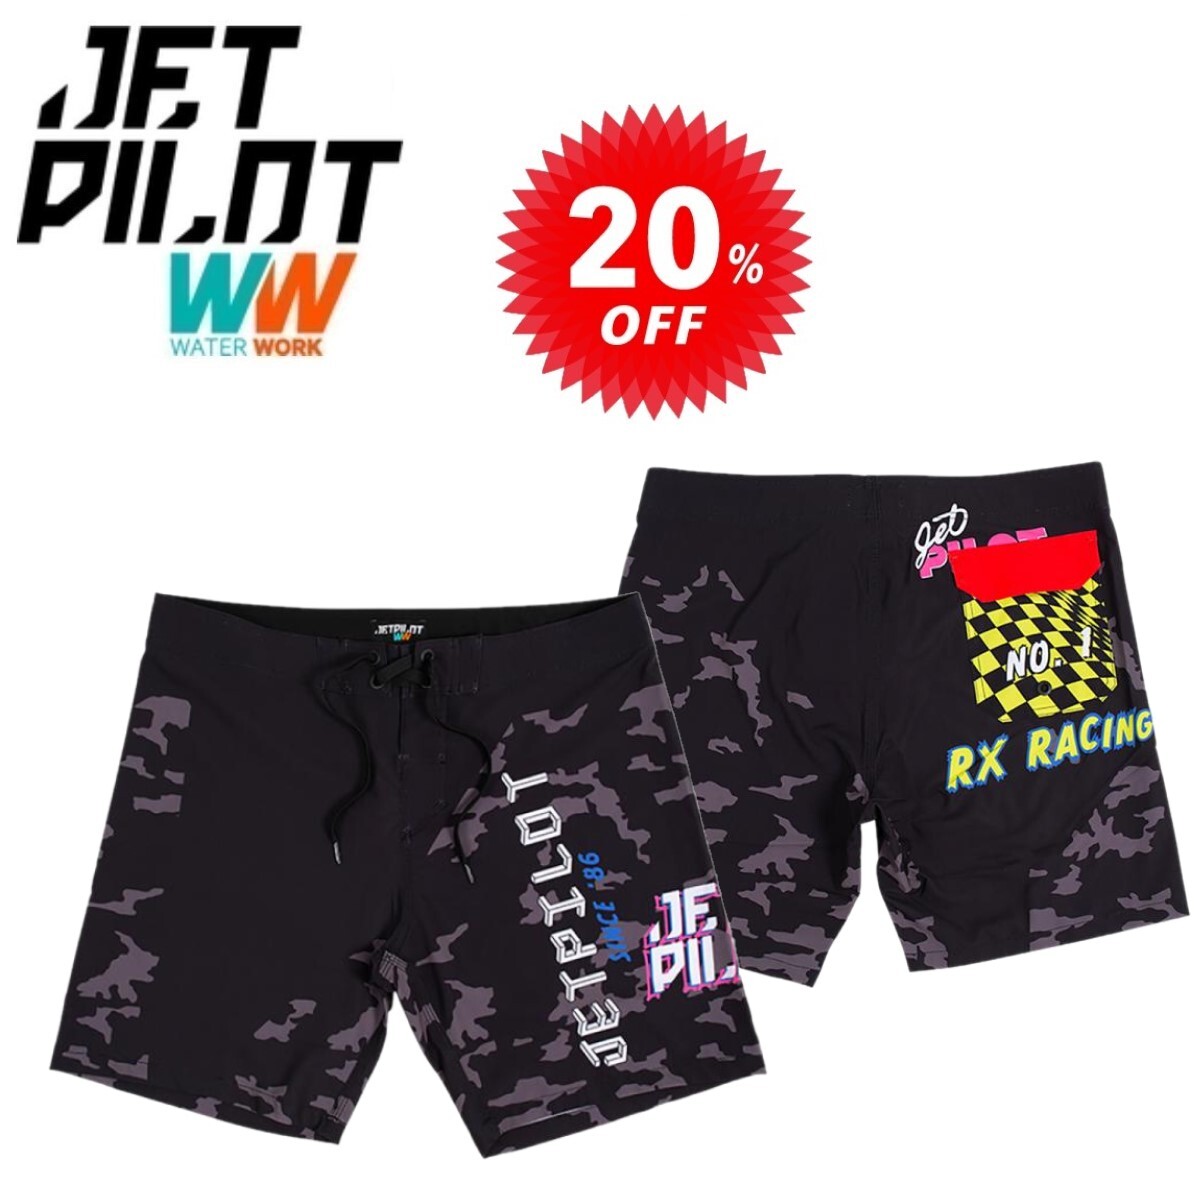  jet Pilot JETPILOT распродажа 20% off спортивные брюки бесплатная доставка RX гонки мужской спортивные шорты черный / утка 38 S21904 море хлеб 